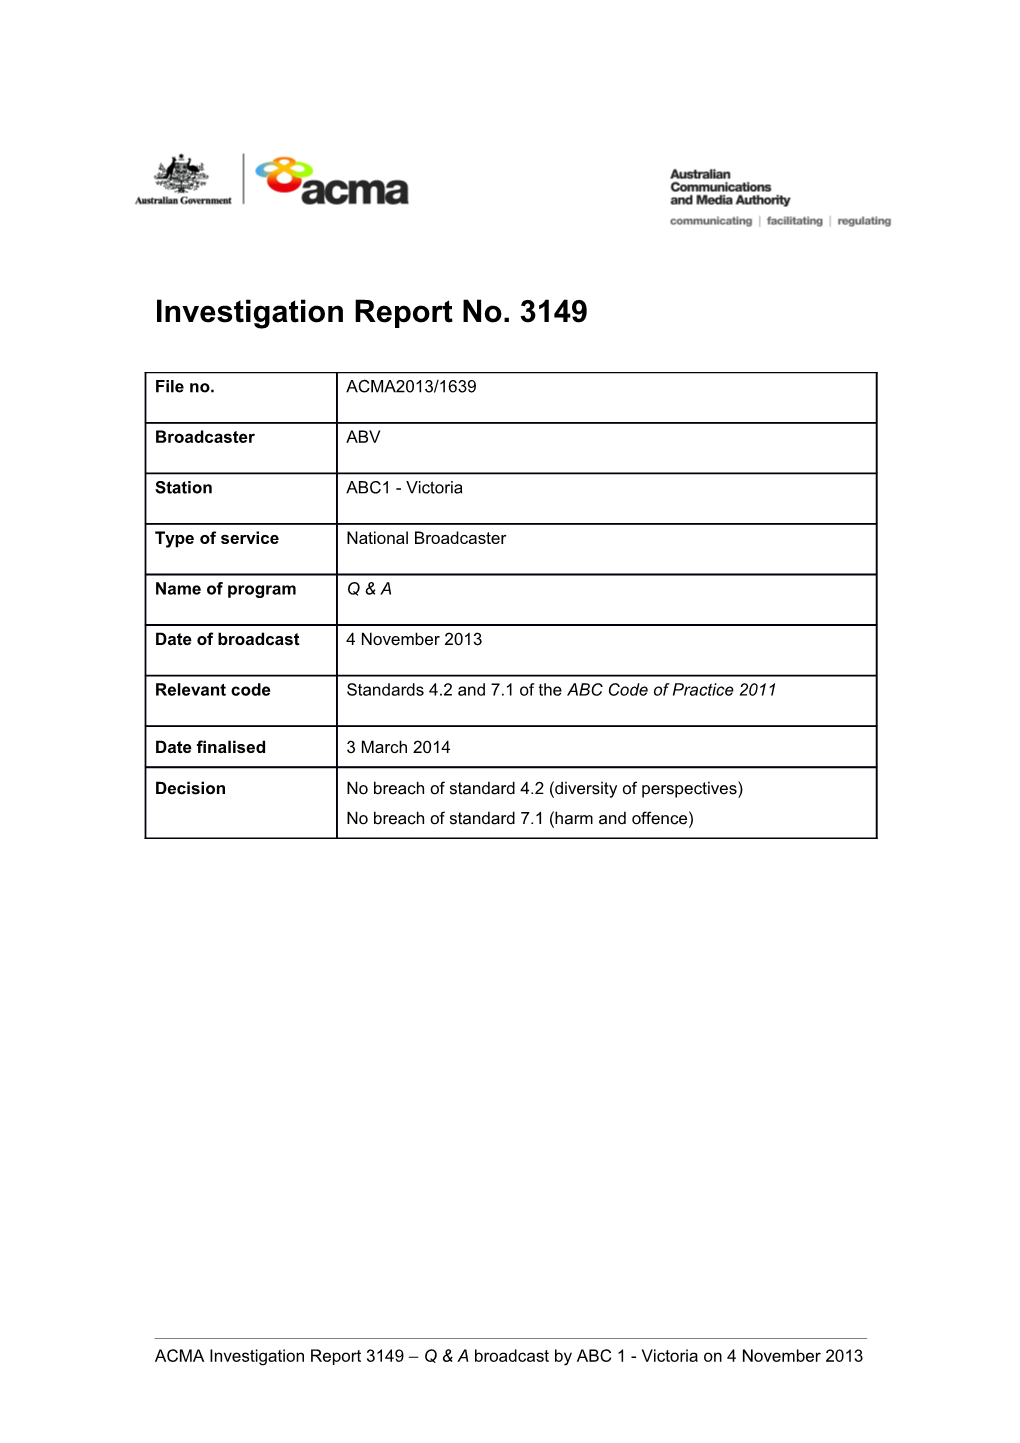 Investigation Report 3149 - ABC1 Victoria